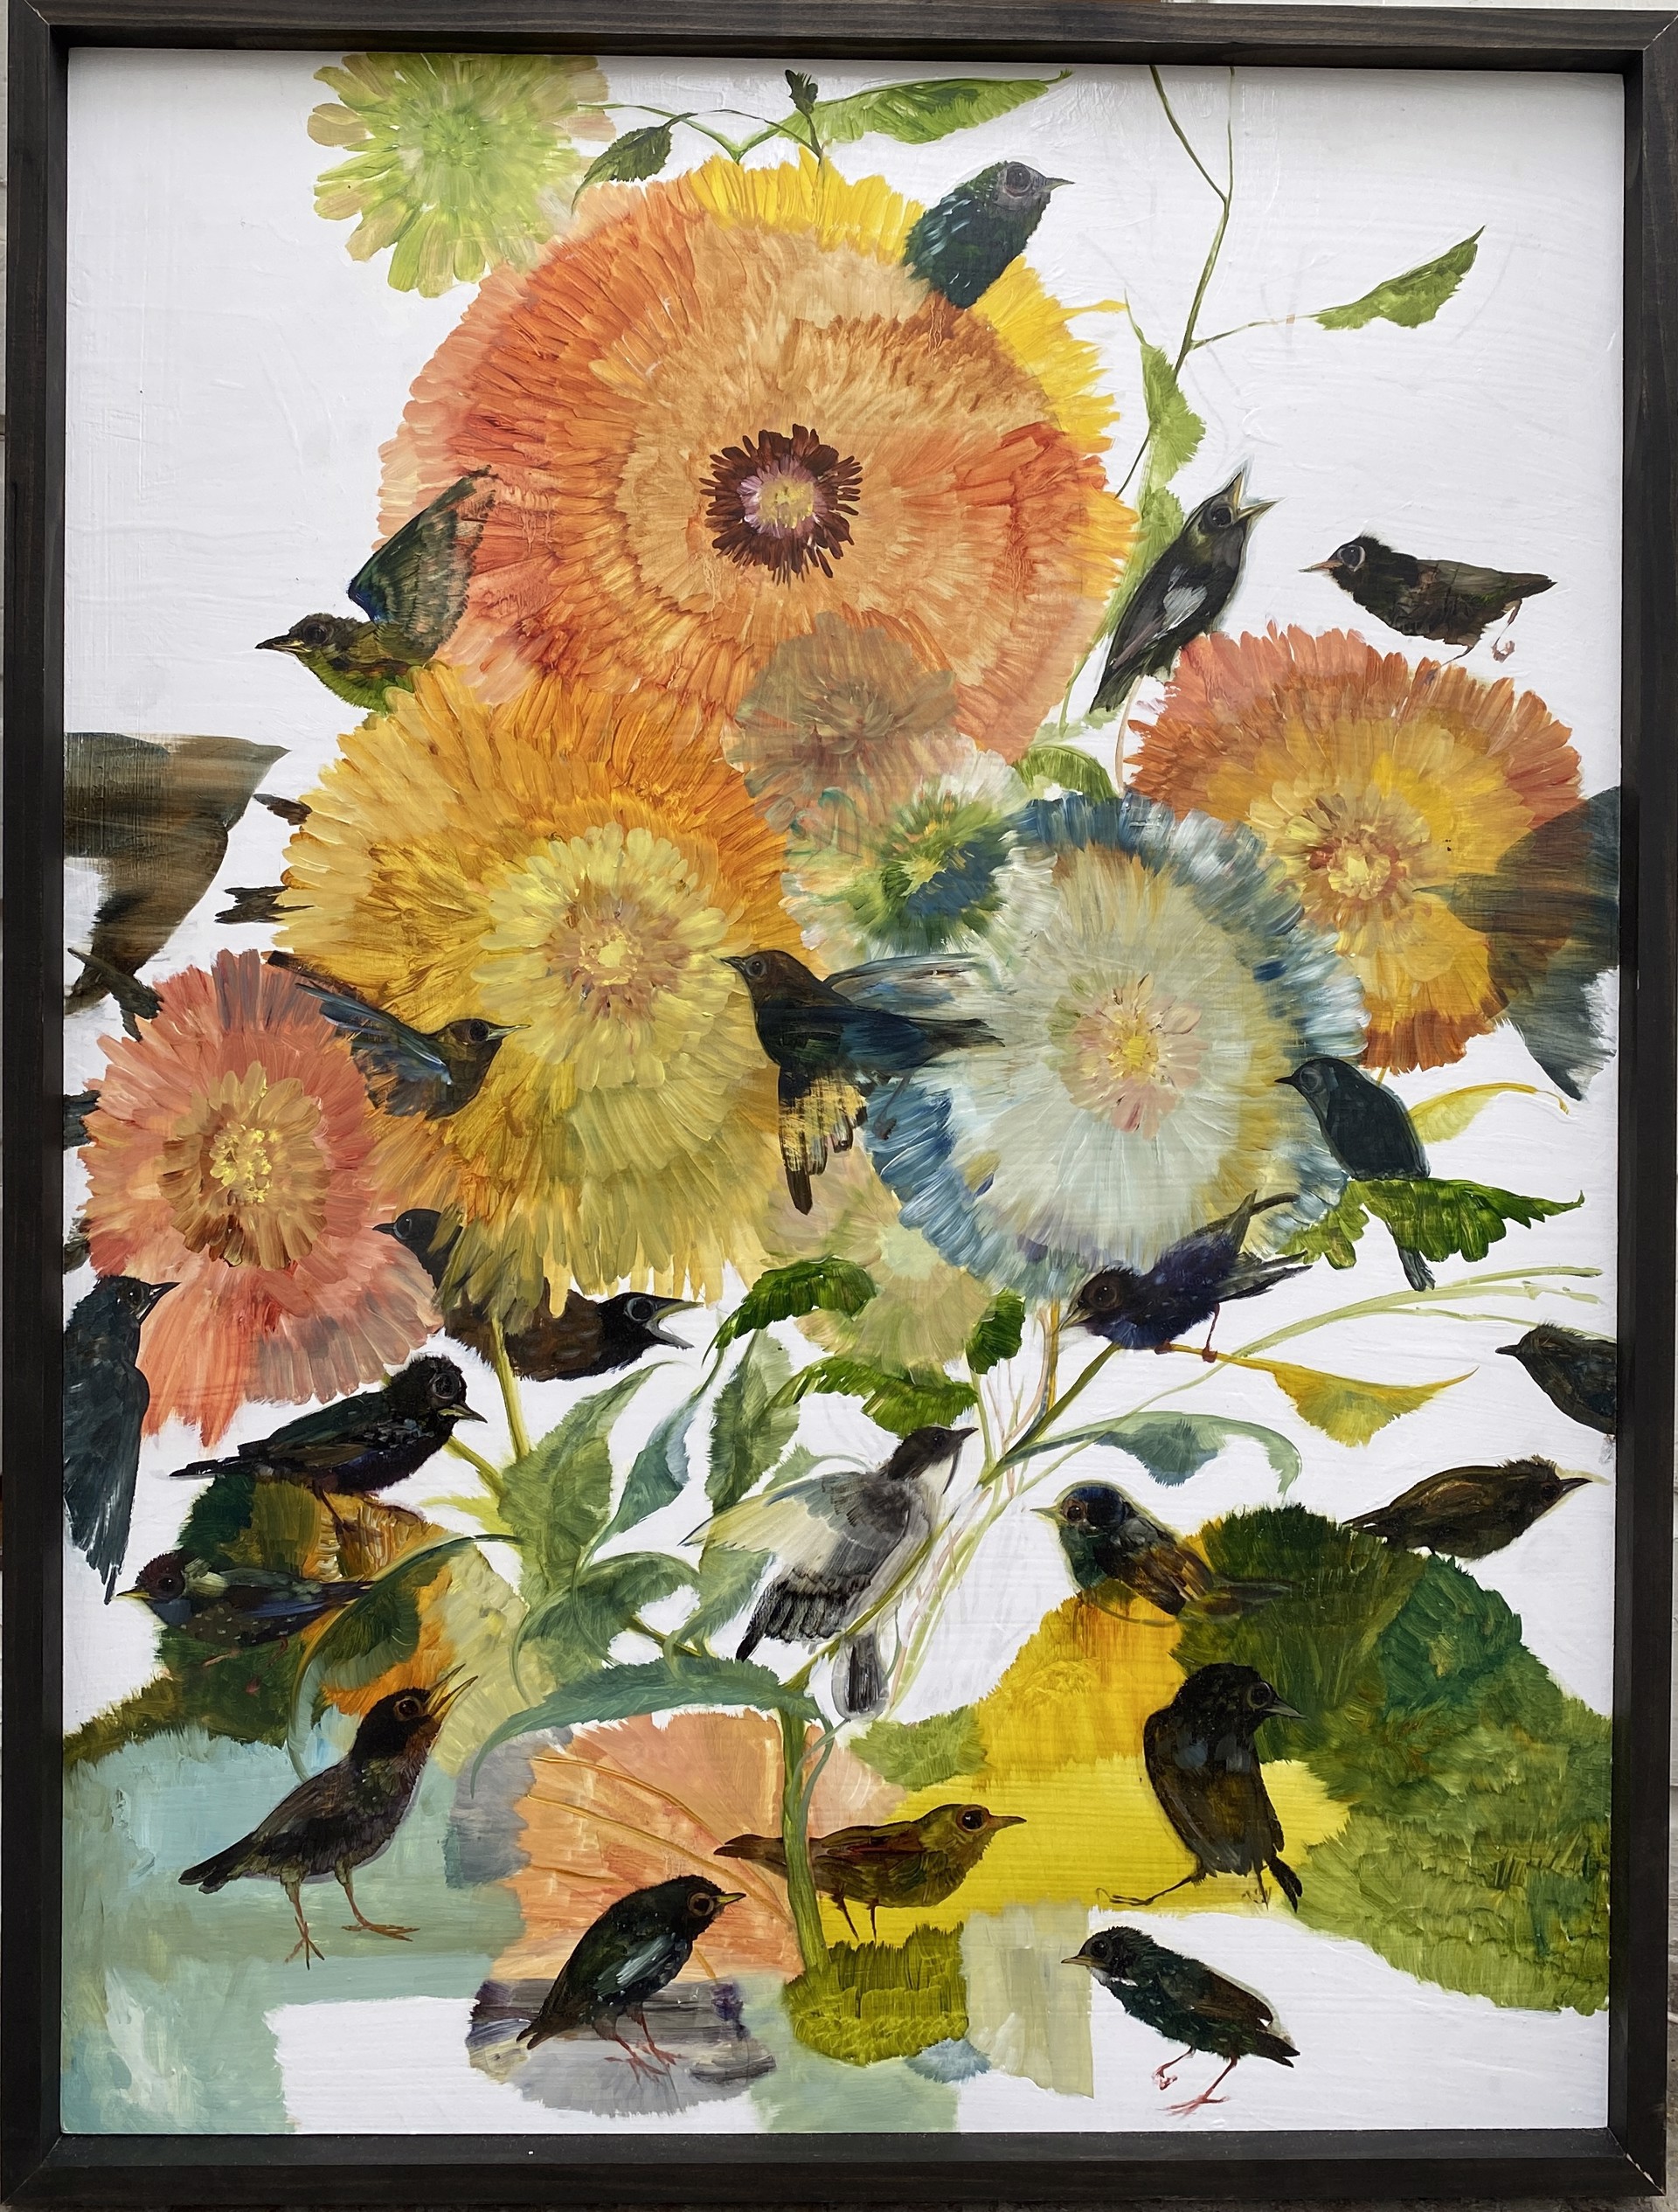 Starling Garden by Diane Kilgore Condon